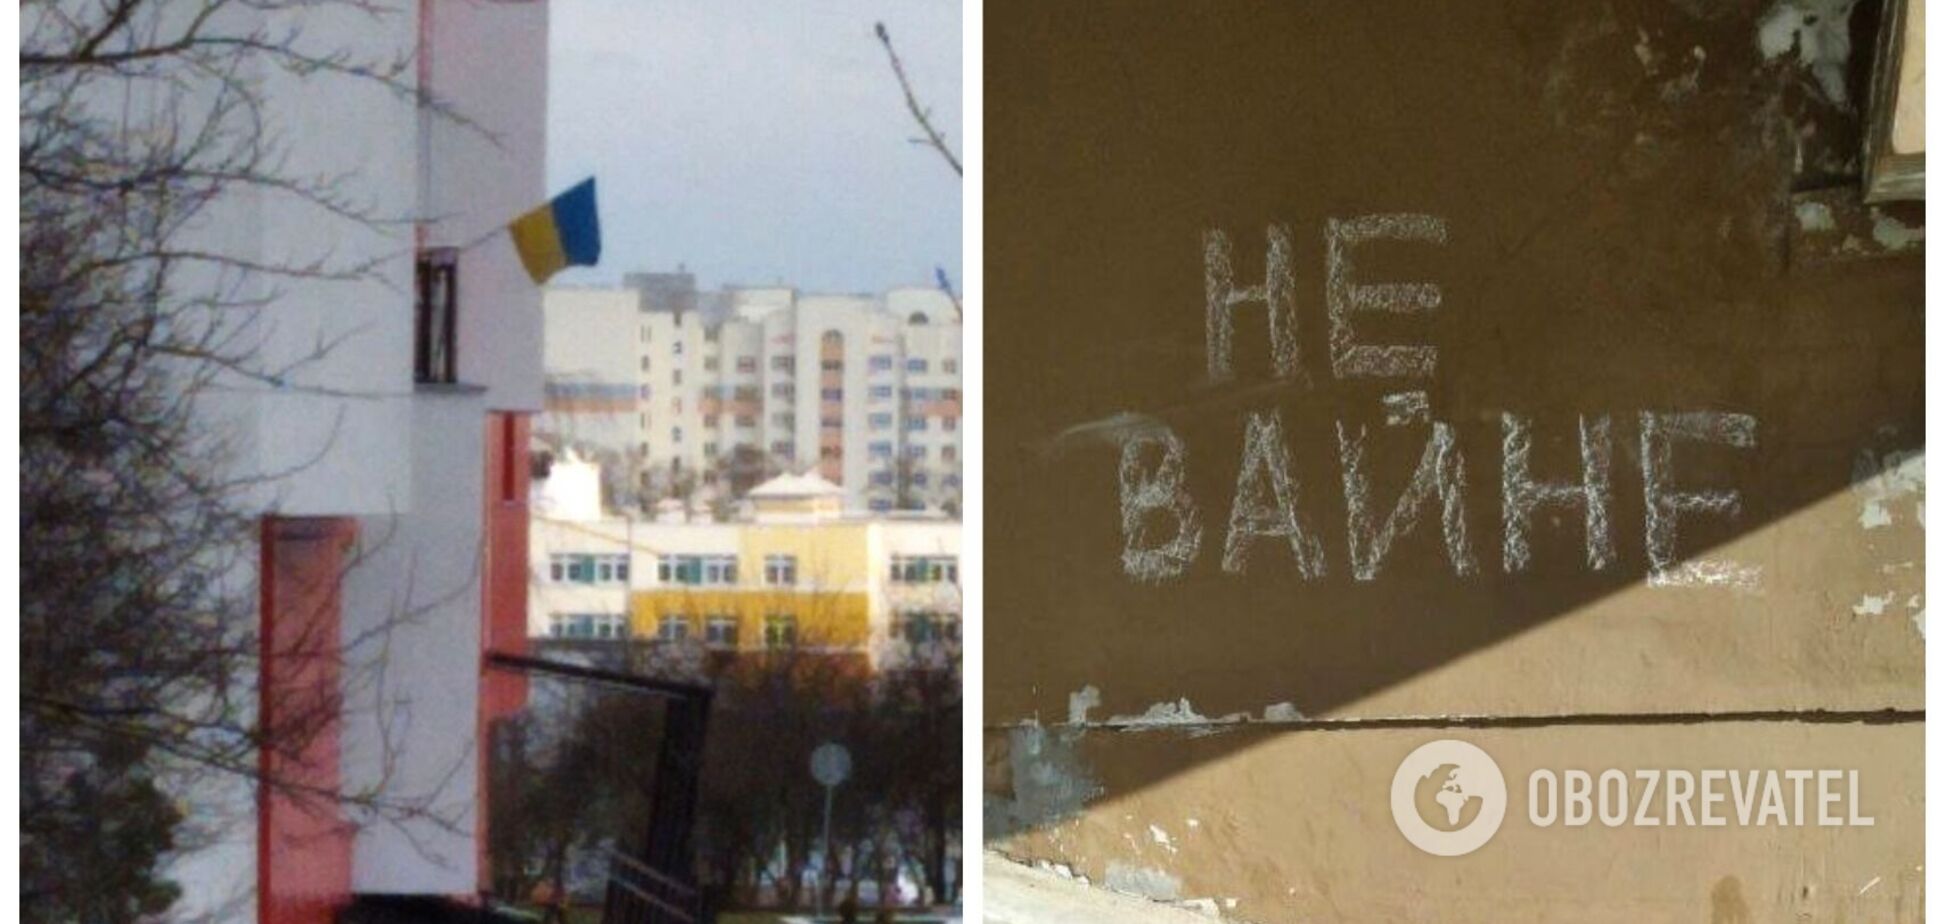 'Жители Гродно против войны': в Беларуси вывесили флаг Украины и разместили антивоенные надписи. Фото